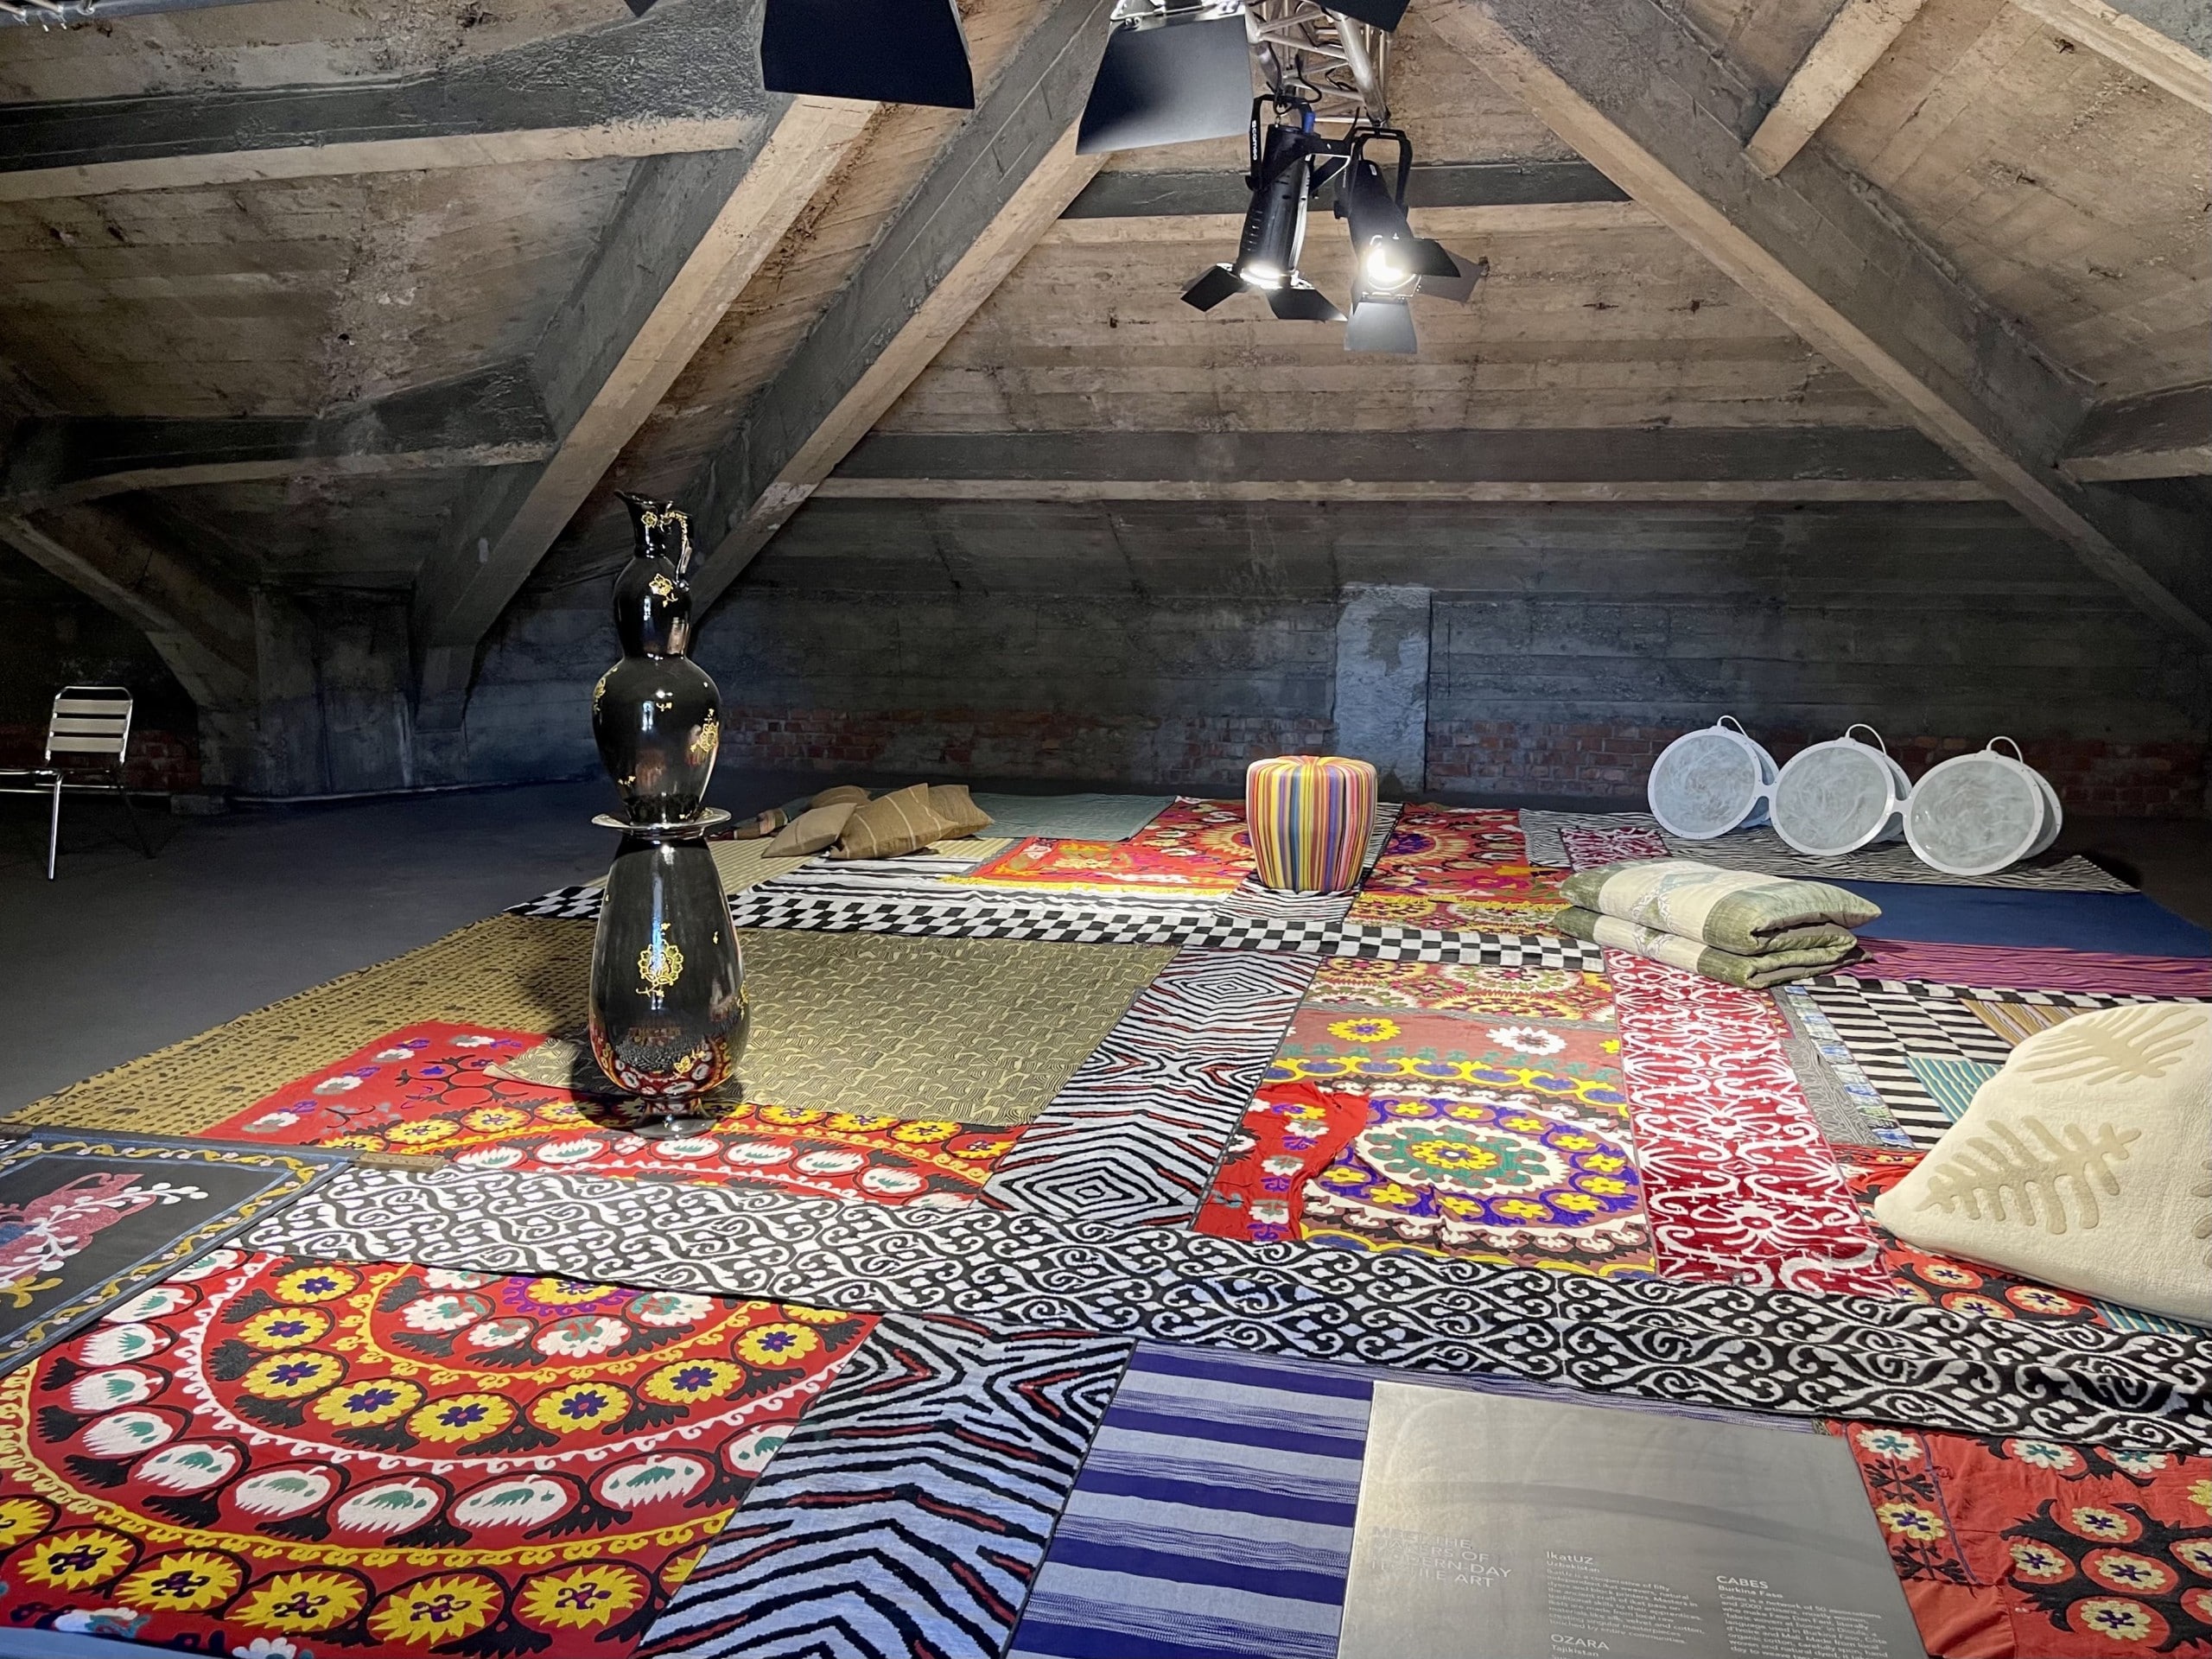 Blick auf mehrere Bunte Teppiche auf dem Boden eines Dachbodens, auf dem ein großes schwarzes Keramikgefäß steht. Alcova 2022, Foto: Baumeister/Fabian Peters